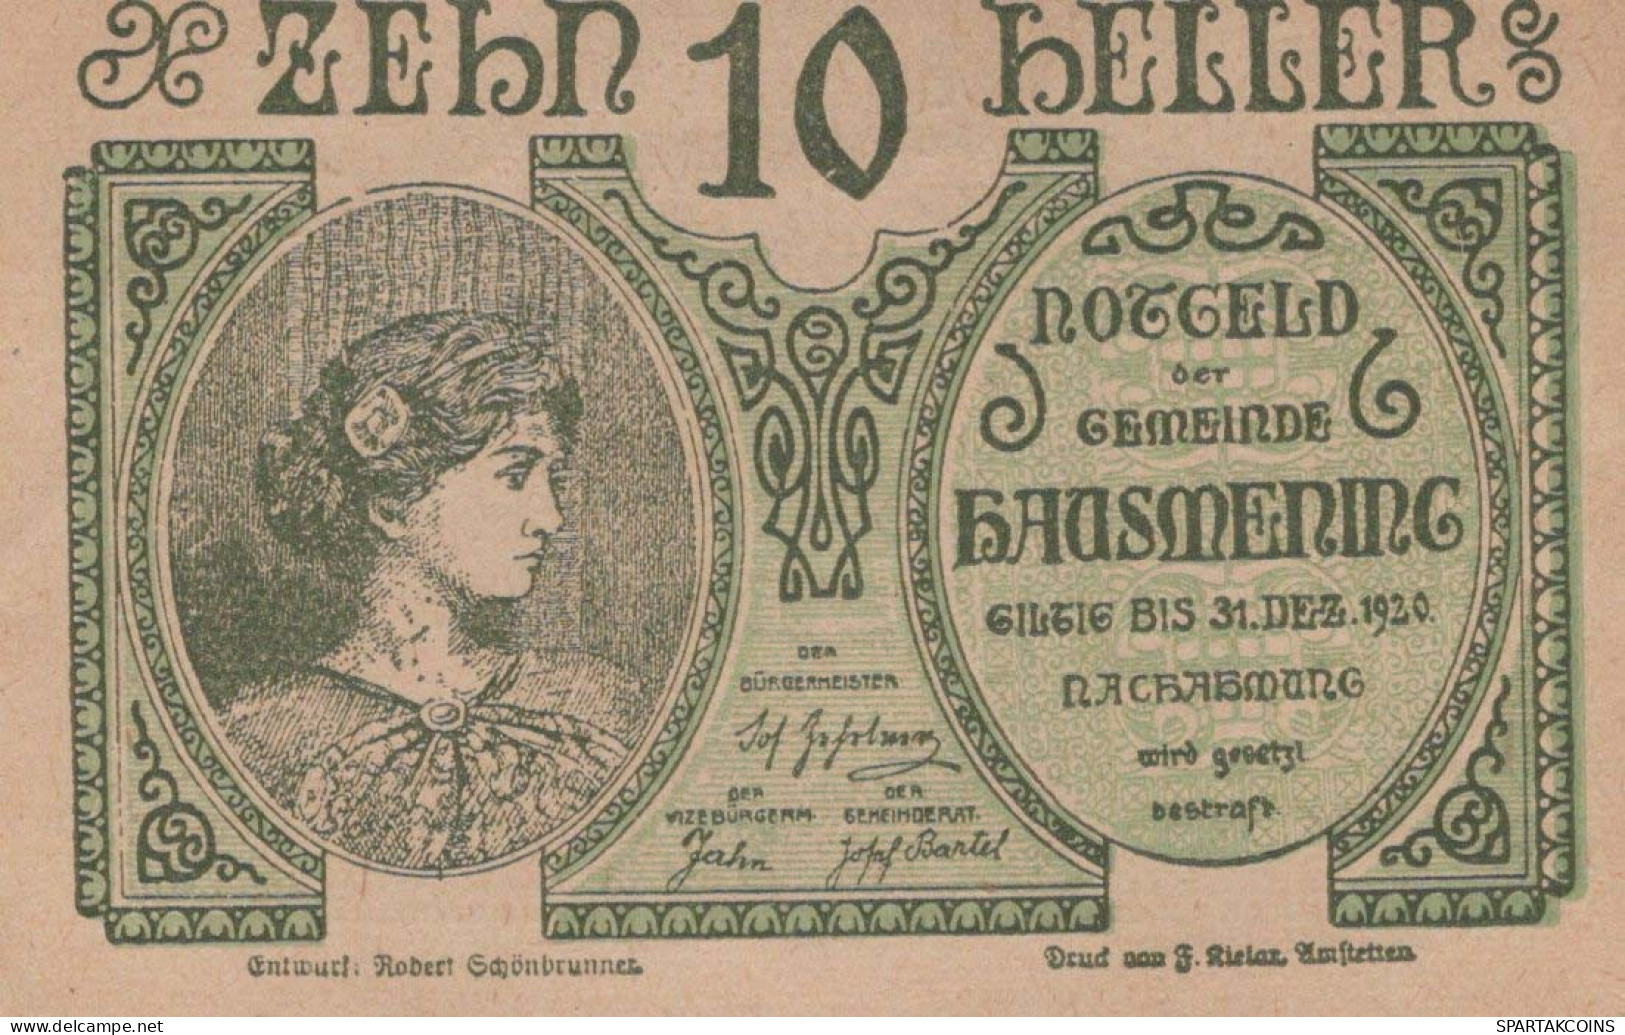 10 HELLER 1920 Stadt HAUSMENING Niedrigeren Österreich Notgeld Papiergeld Banknote #PG860 - [11] Local Banknote Issues